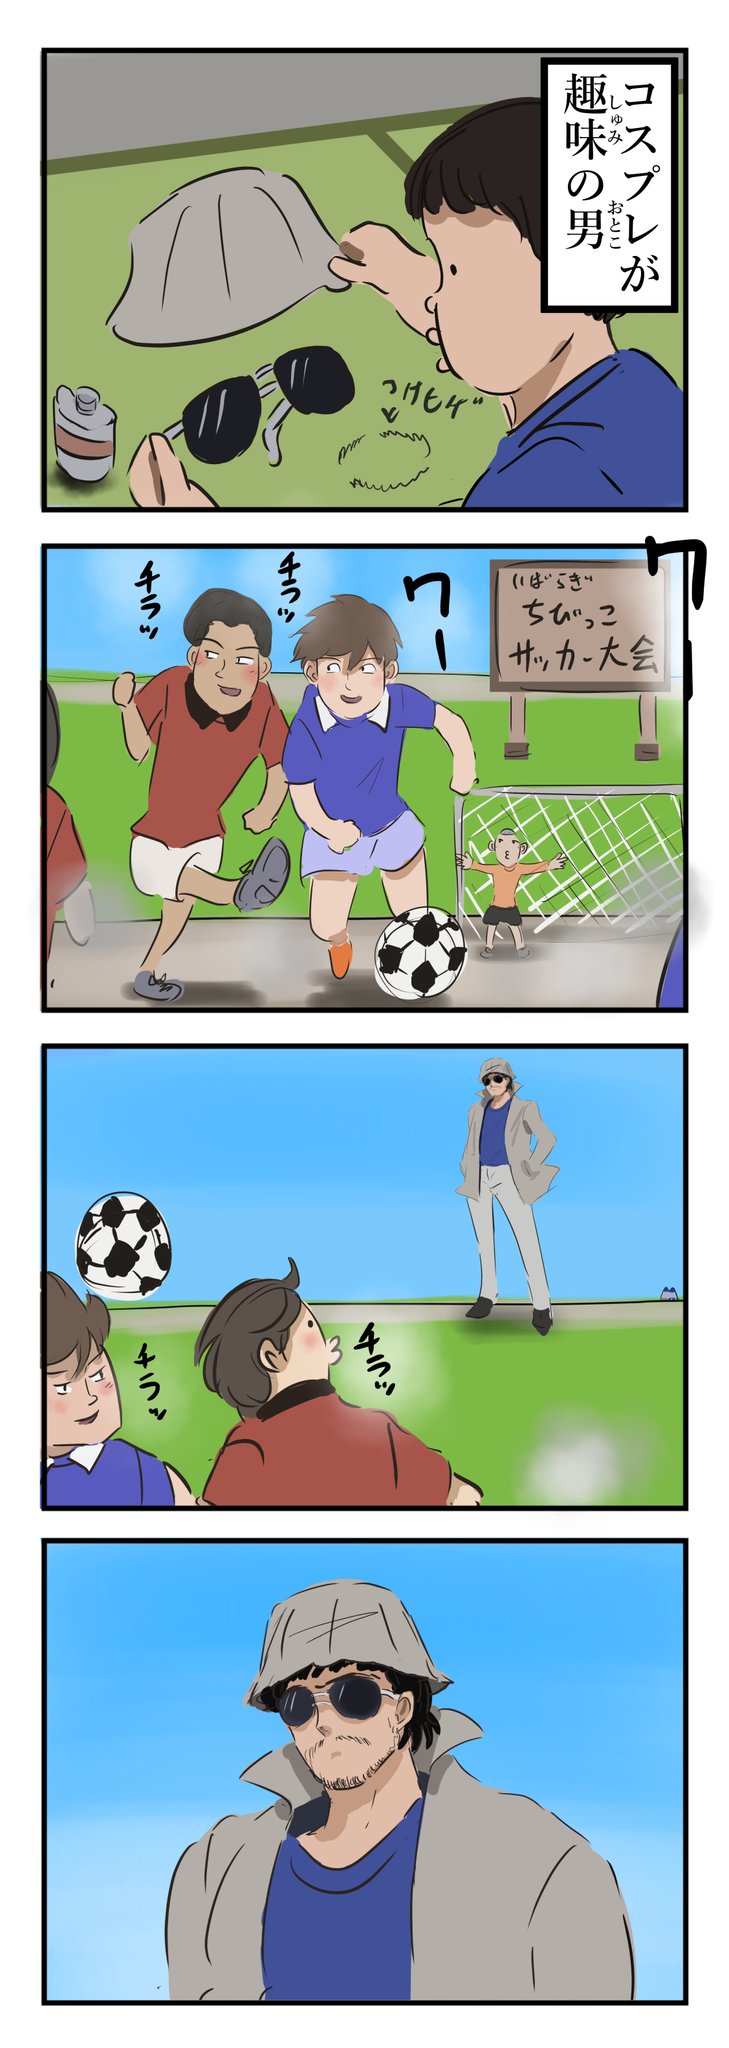 カコミスル コスプレして少年サッカーを観るのが趣味の男